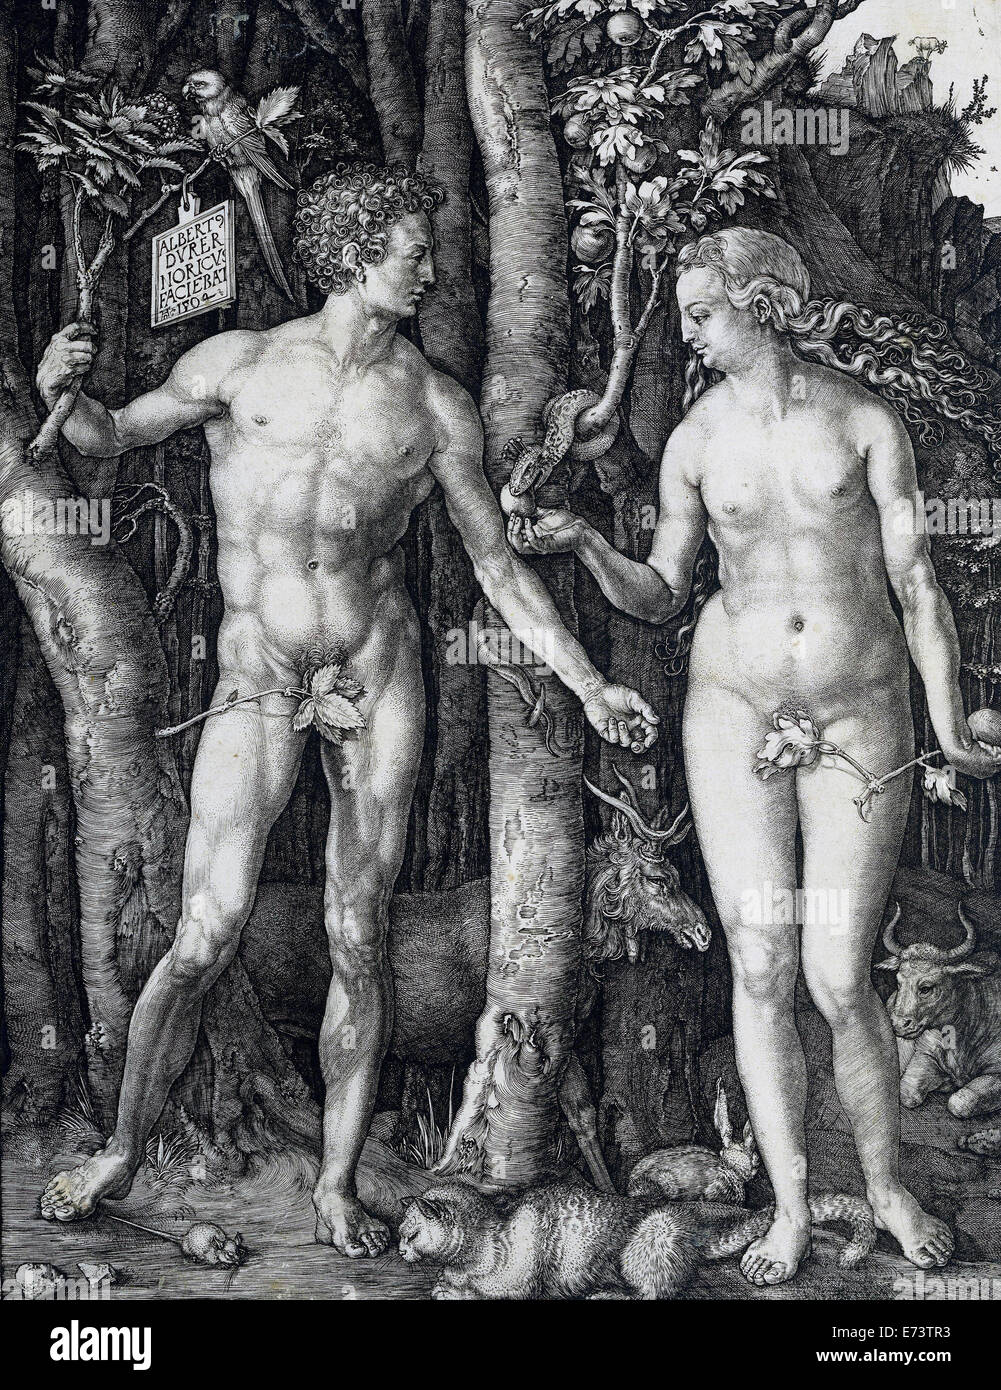 Adán y Eva de Alberto Durero - 1504 Foto de stock